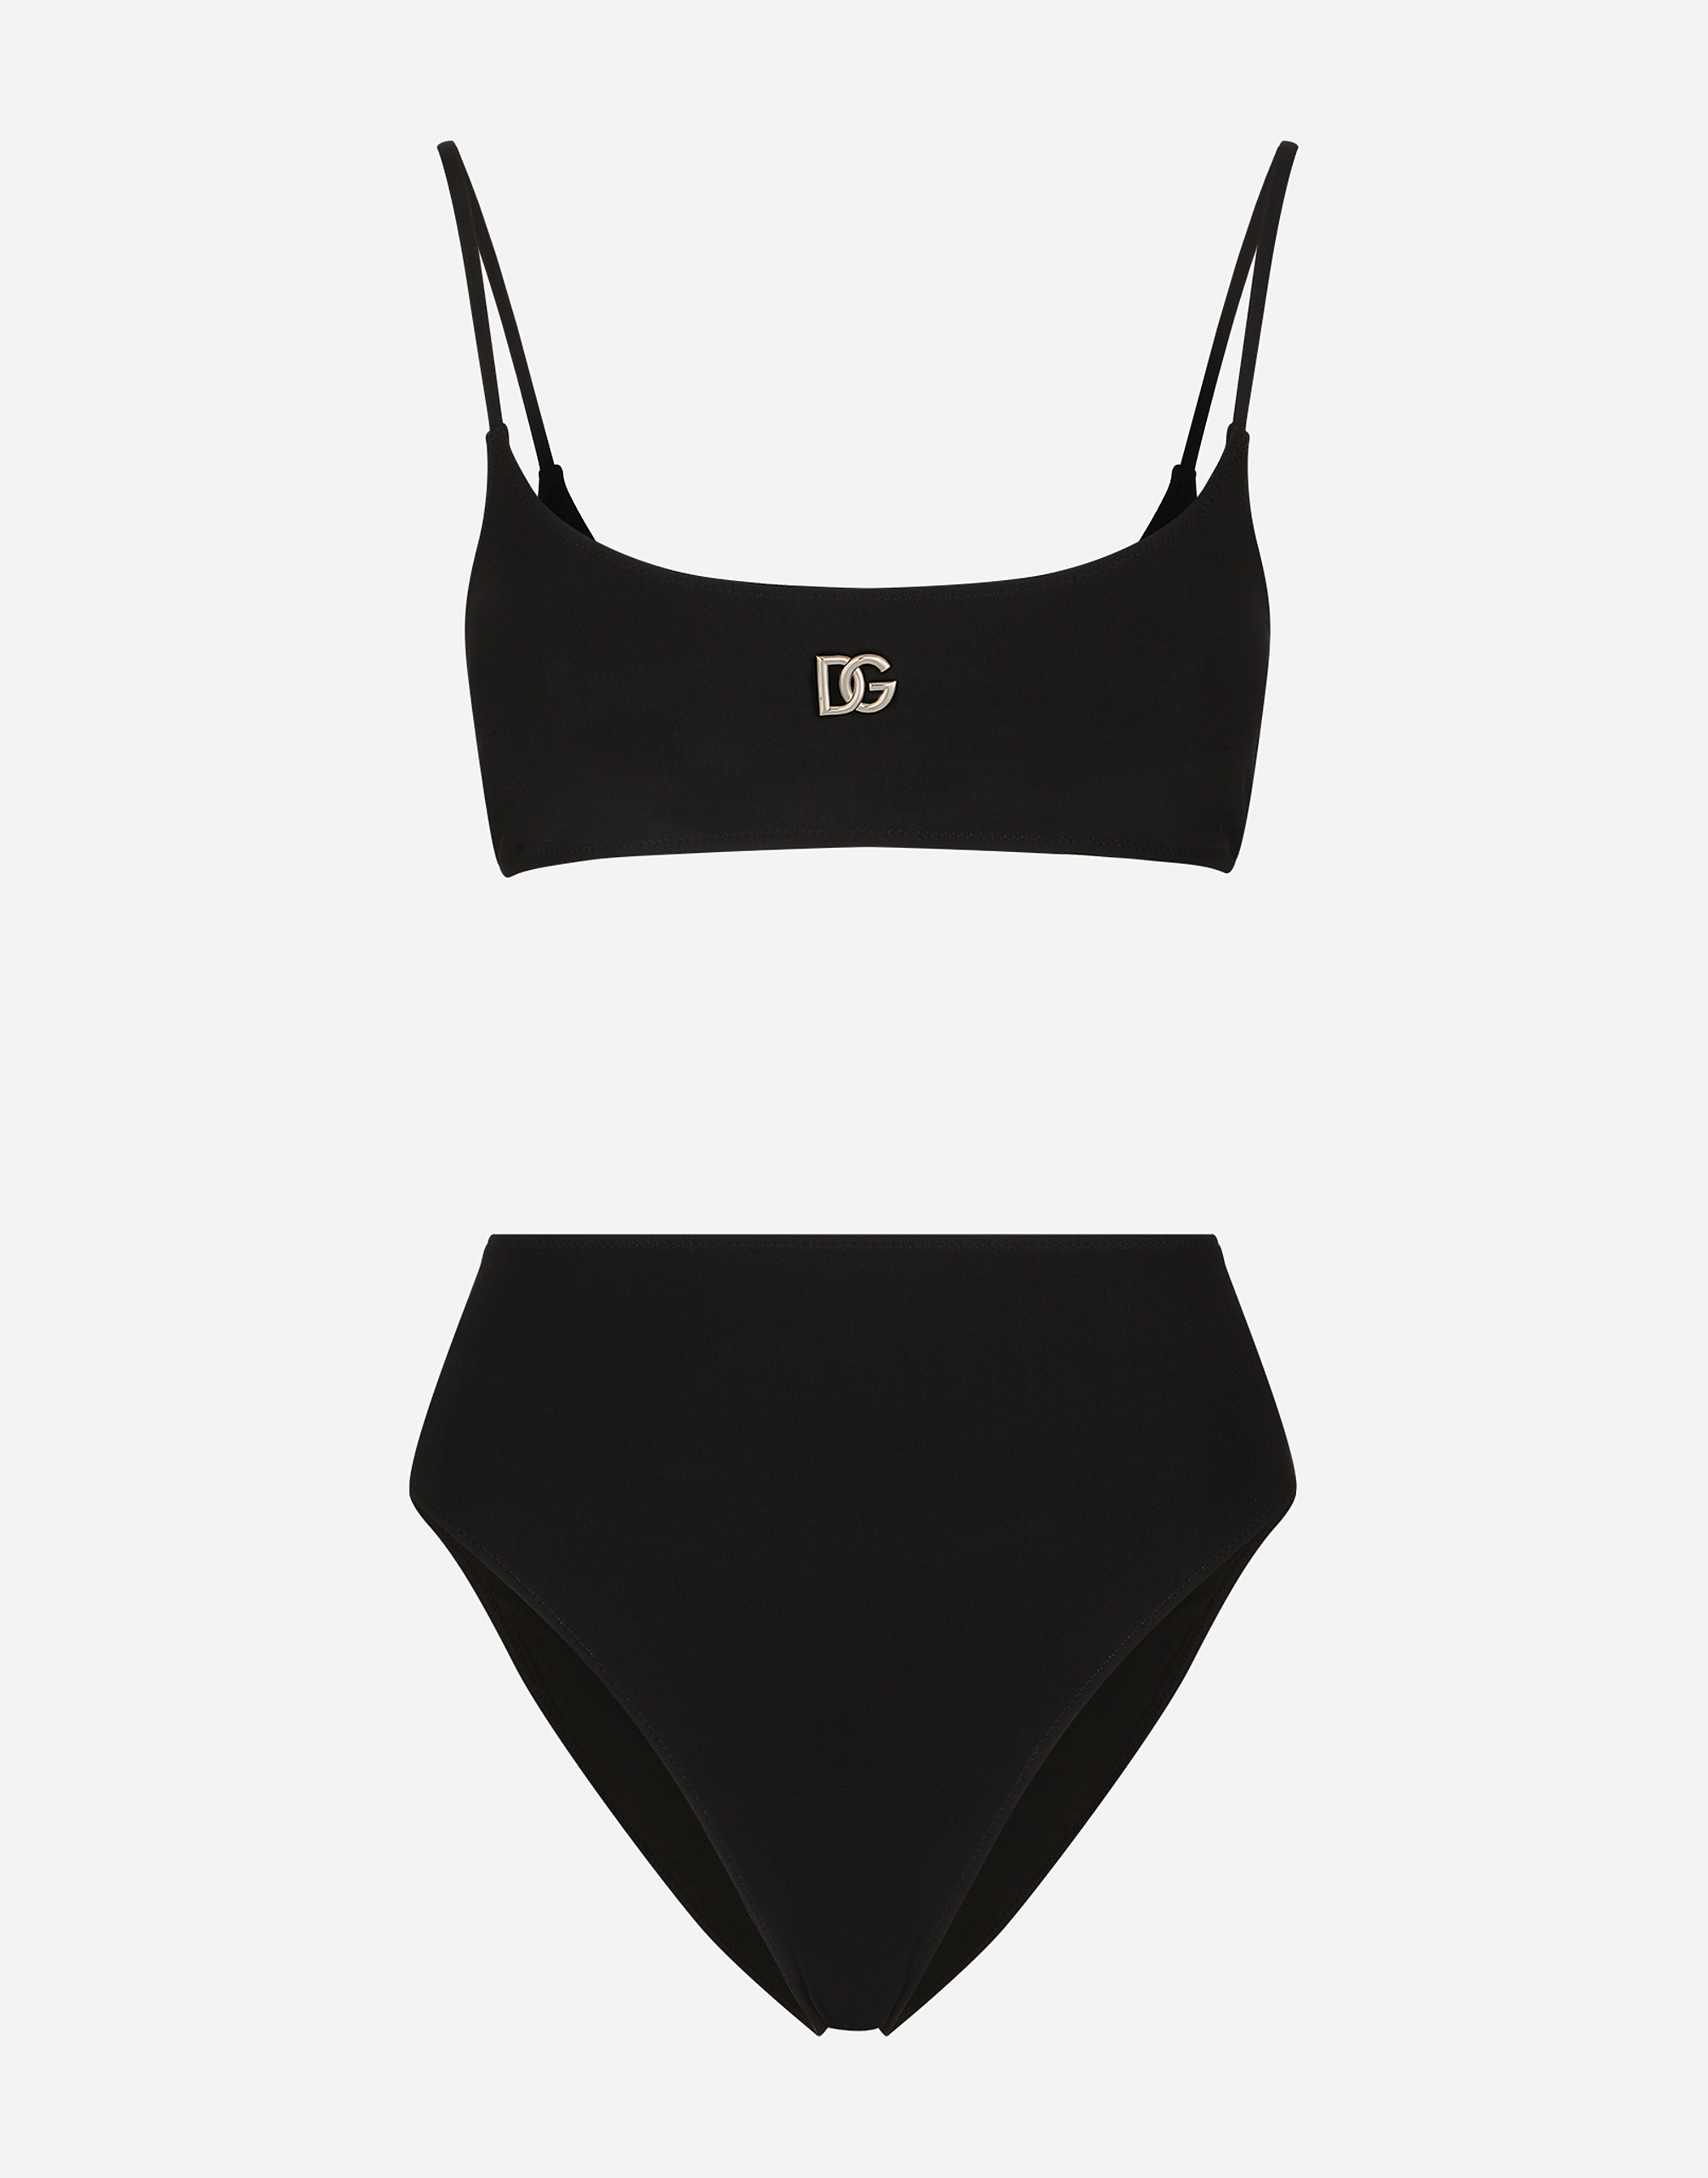 Bralet bikini with DG logo in Black